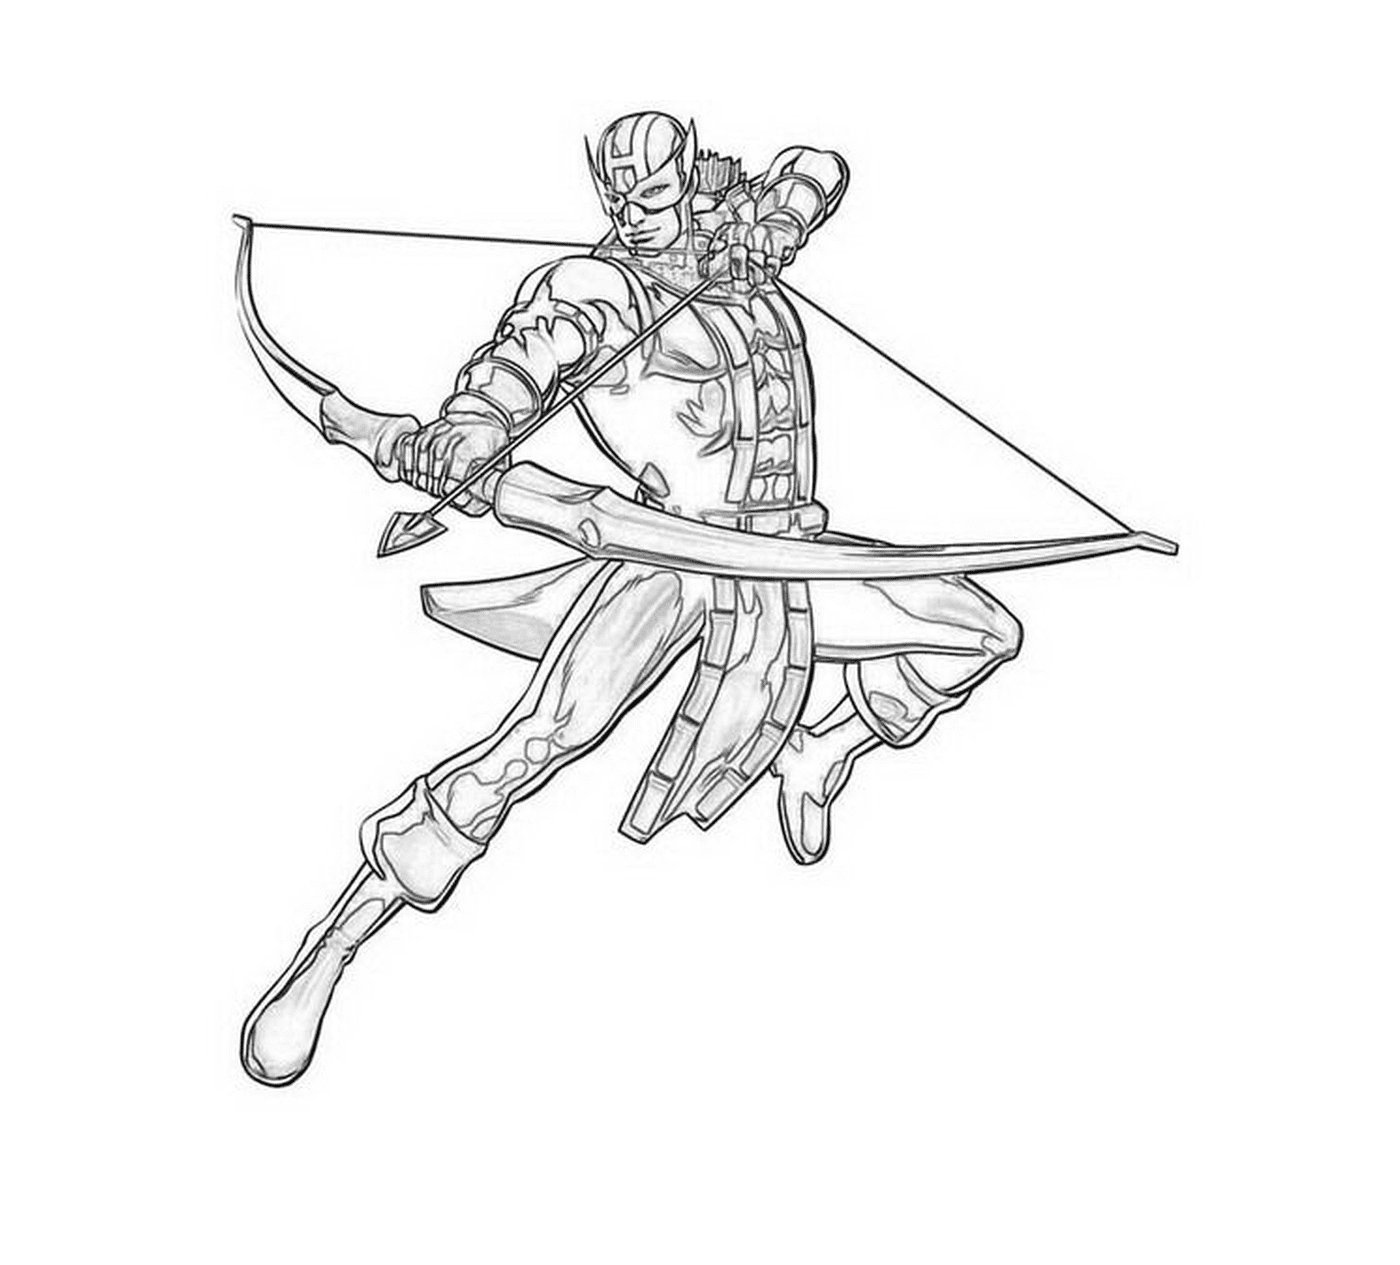  Um homem segurando um arco e flechas 